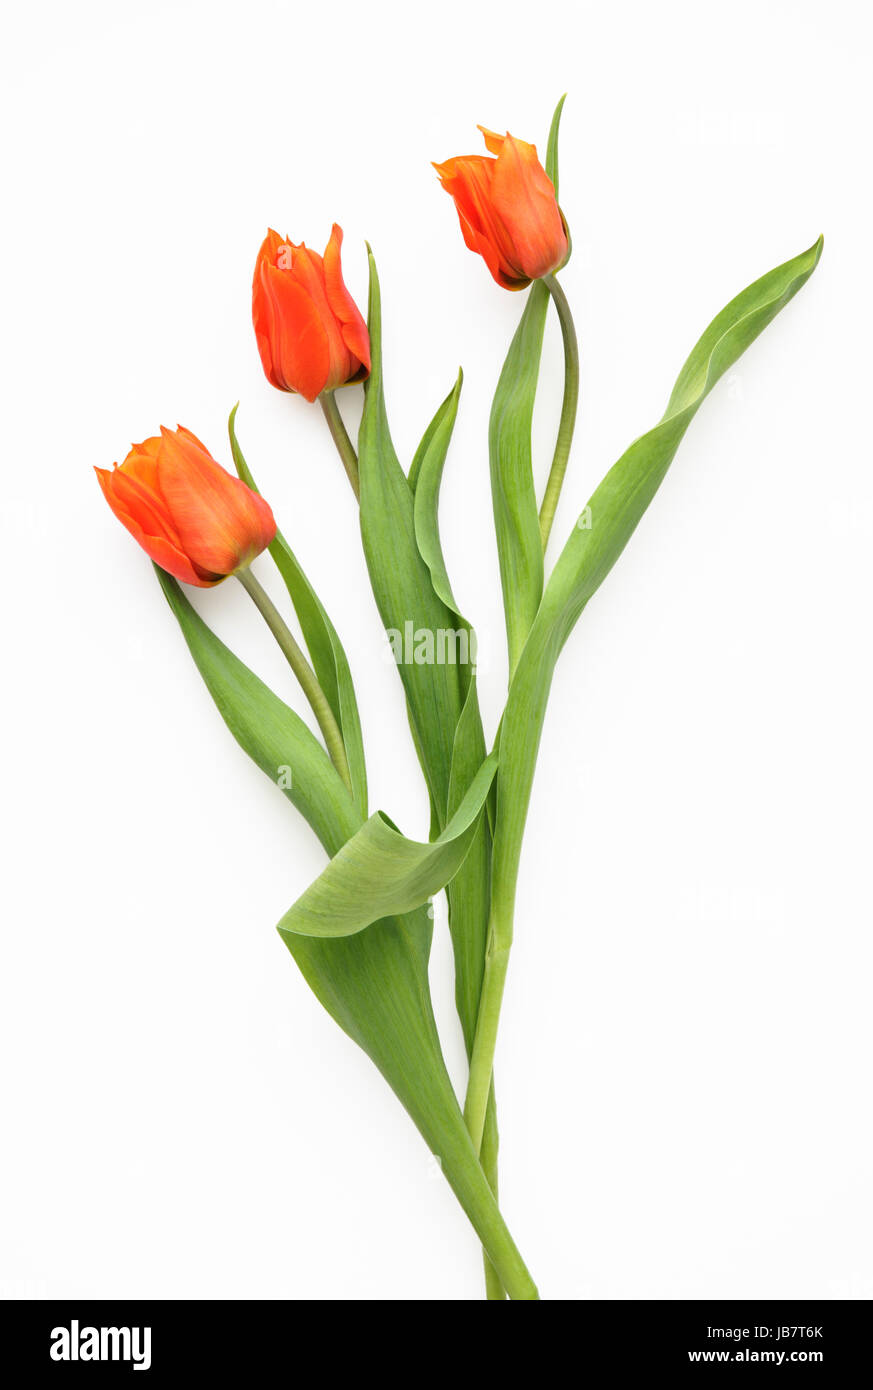 Trois tulipes orange sur fond blanc Banque D'Images